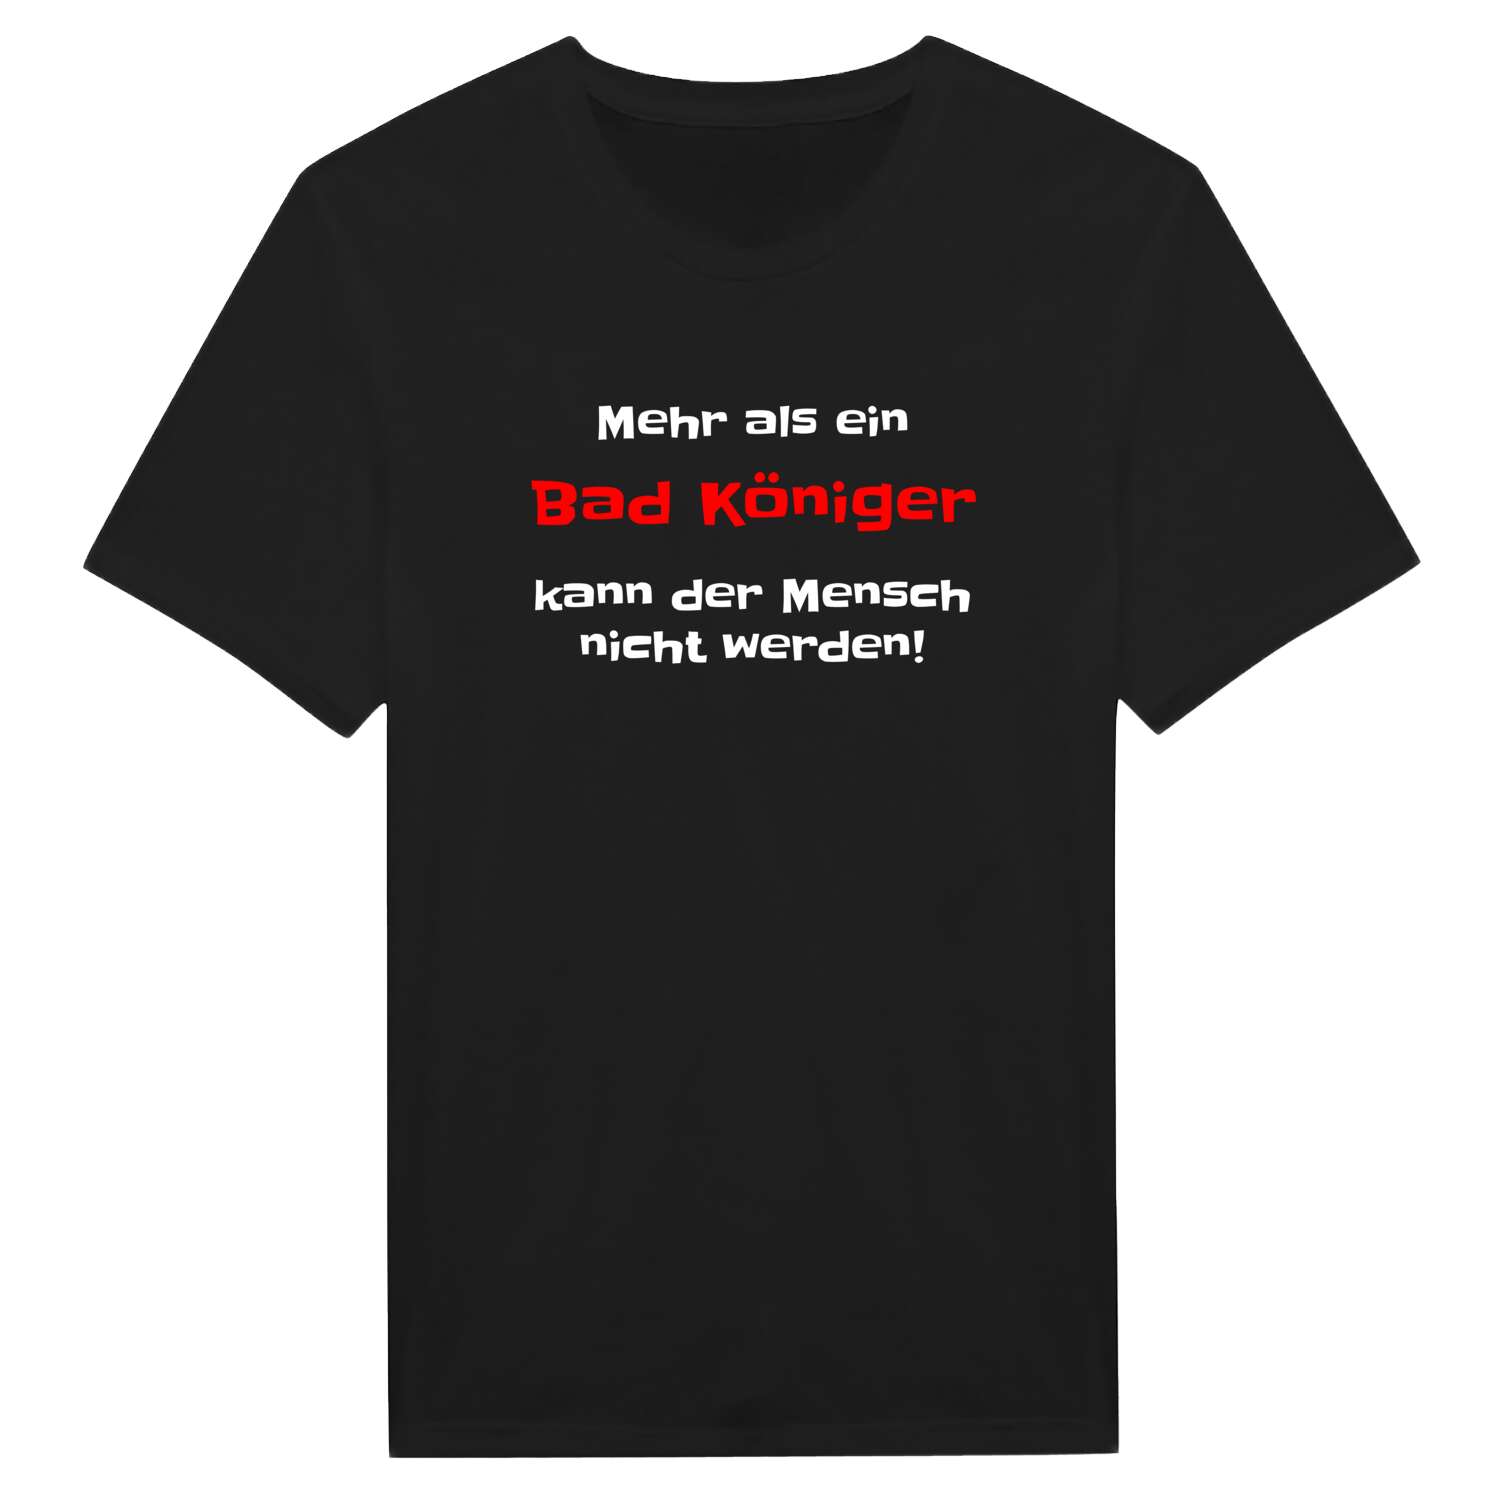 Bad König T-Shirt »Mehr als ein«